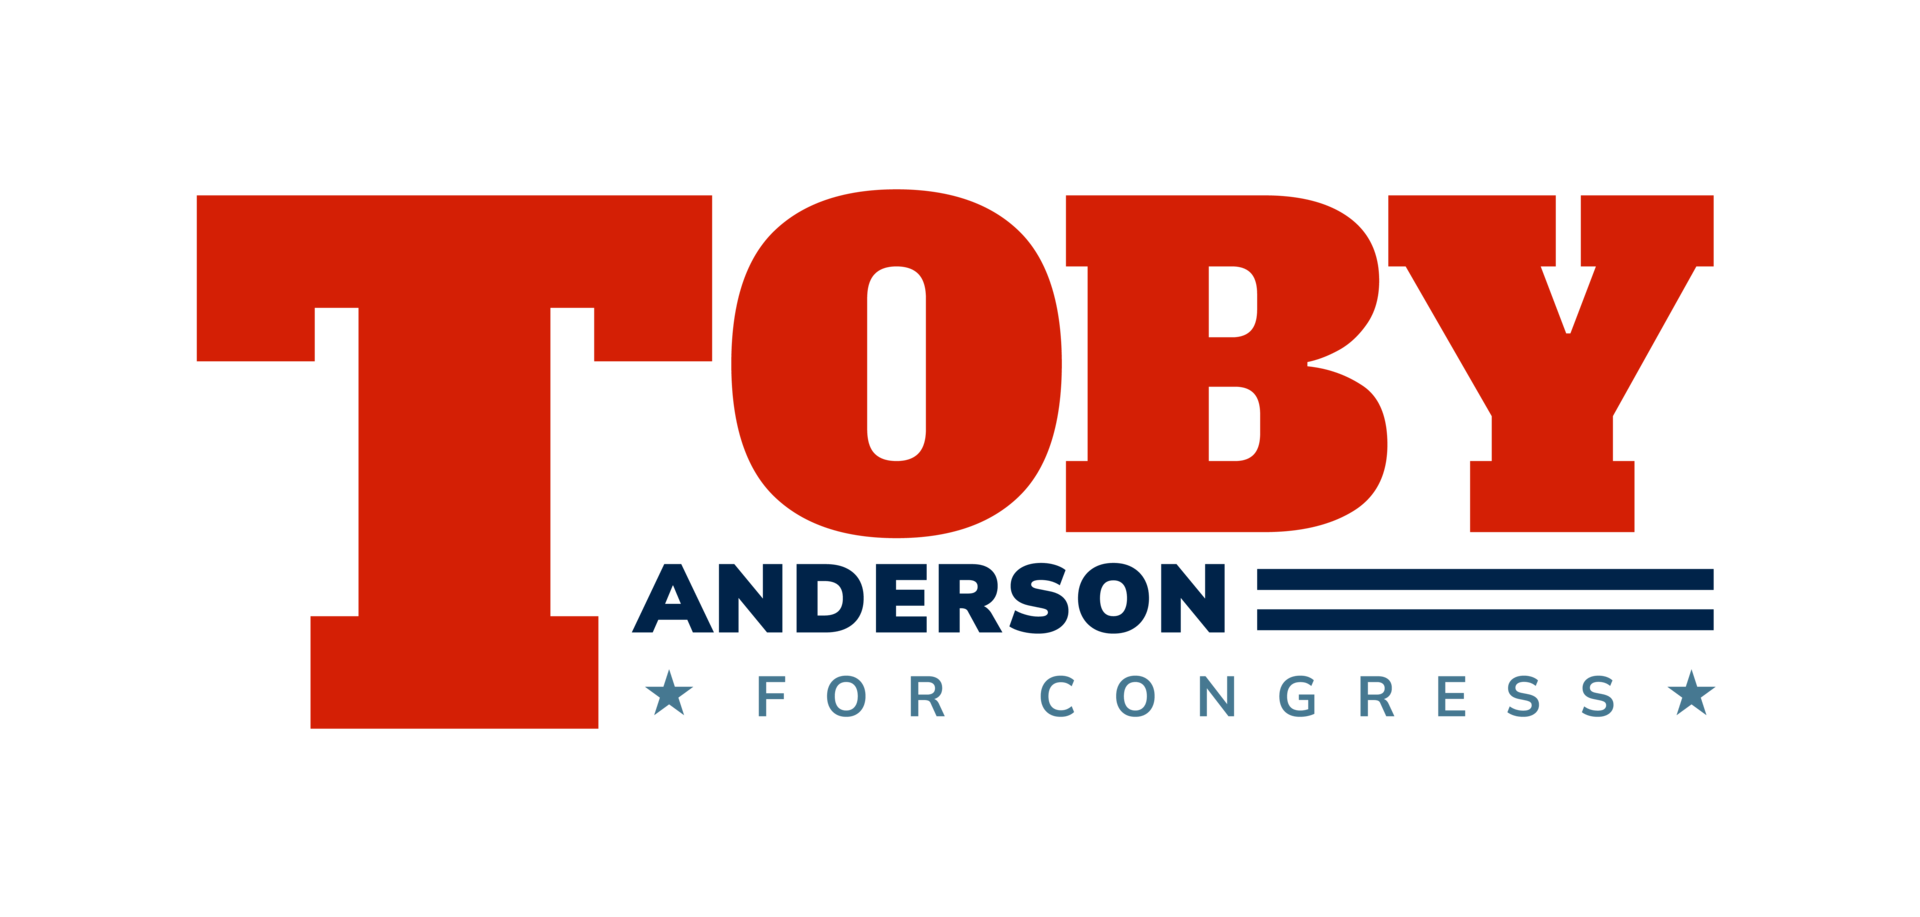 Anderson toby logo fullcolor